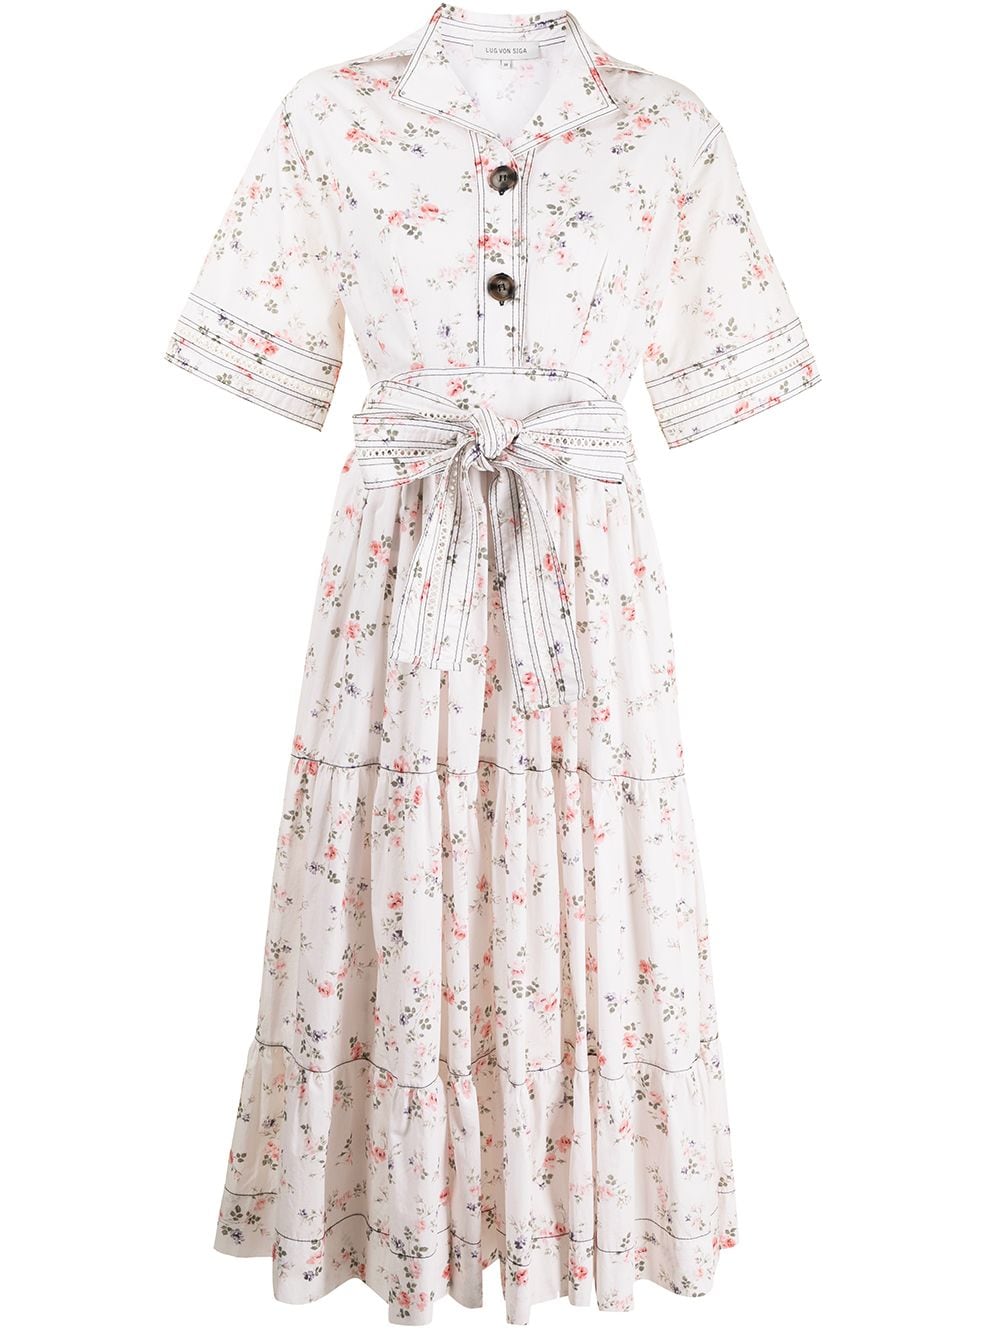 LUG VON SIGA floral-print Shirt Dress - Farfetch